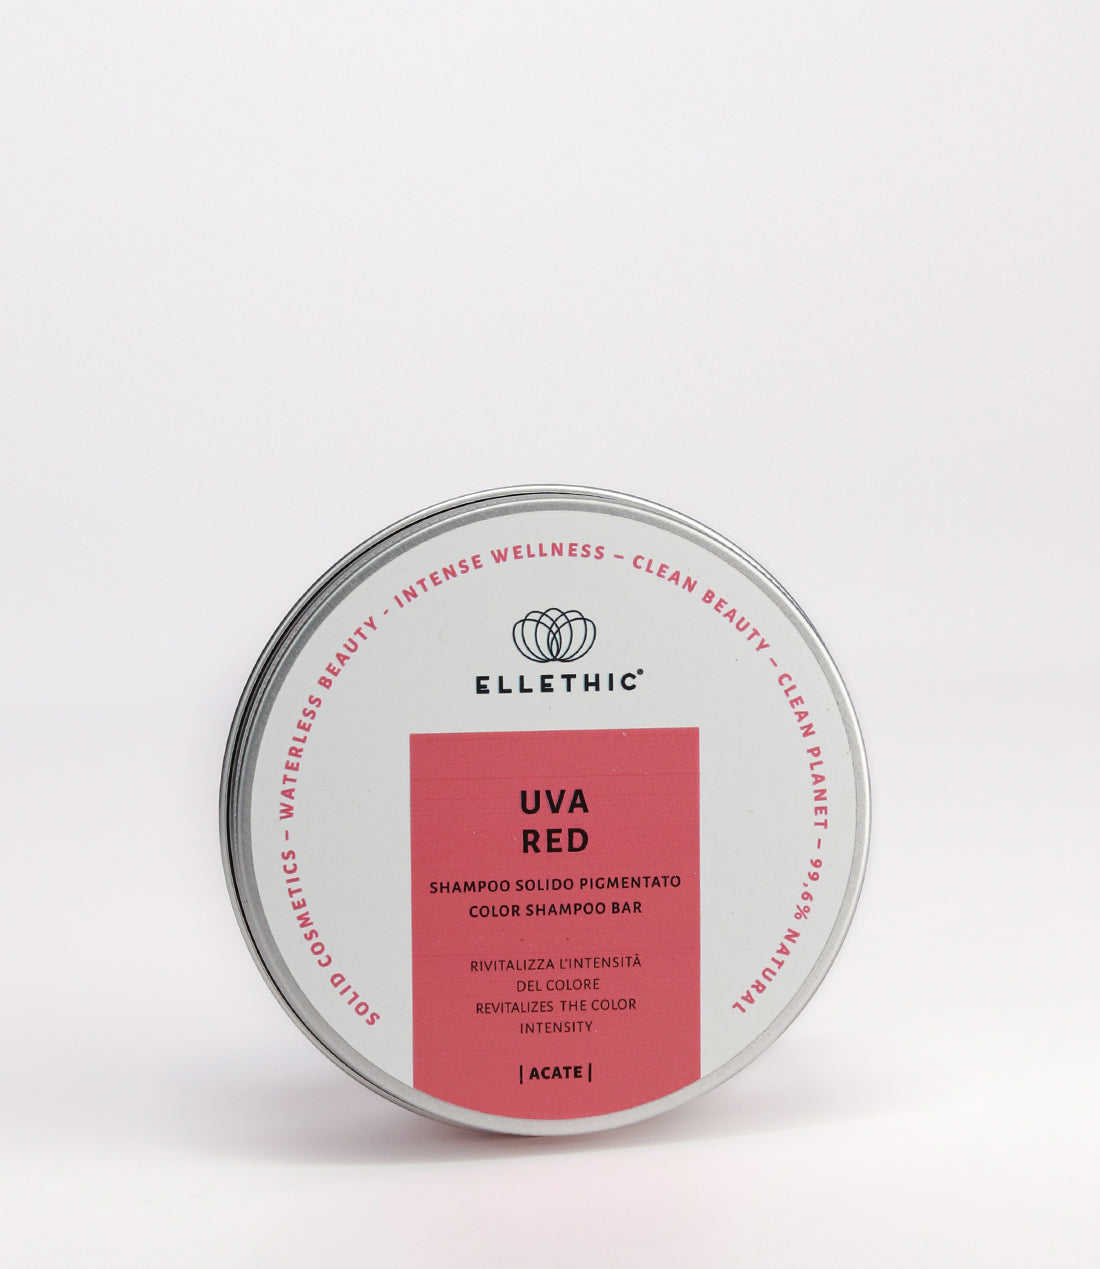 Shampoo solido pigmentato Uva Red - Acate